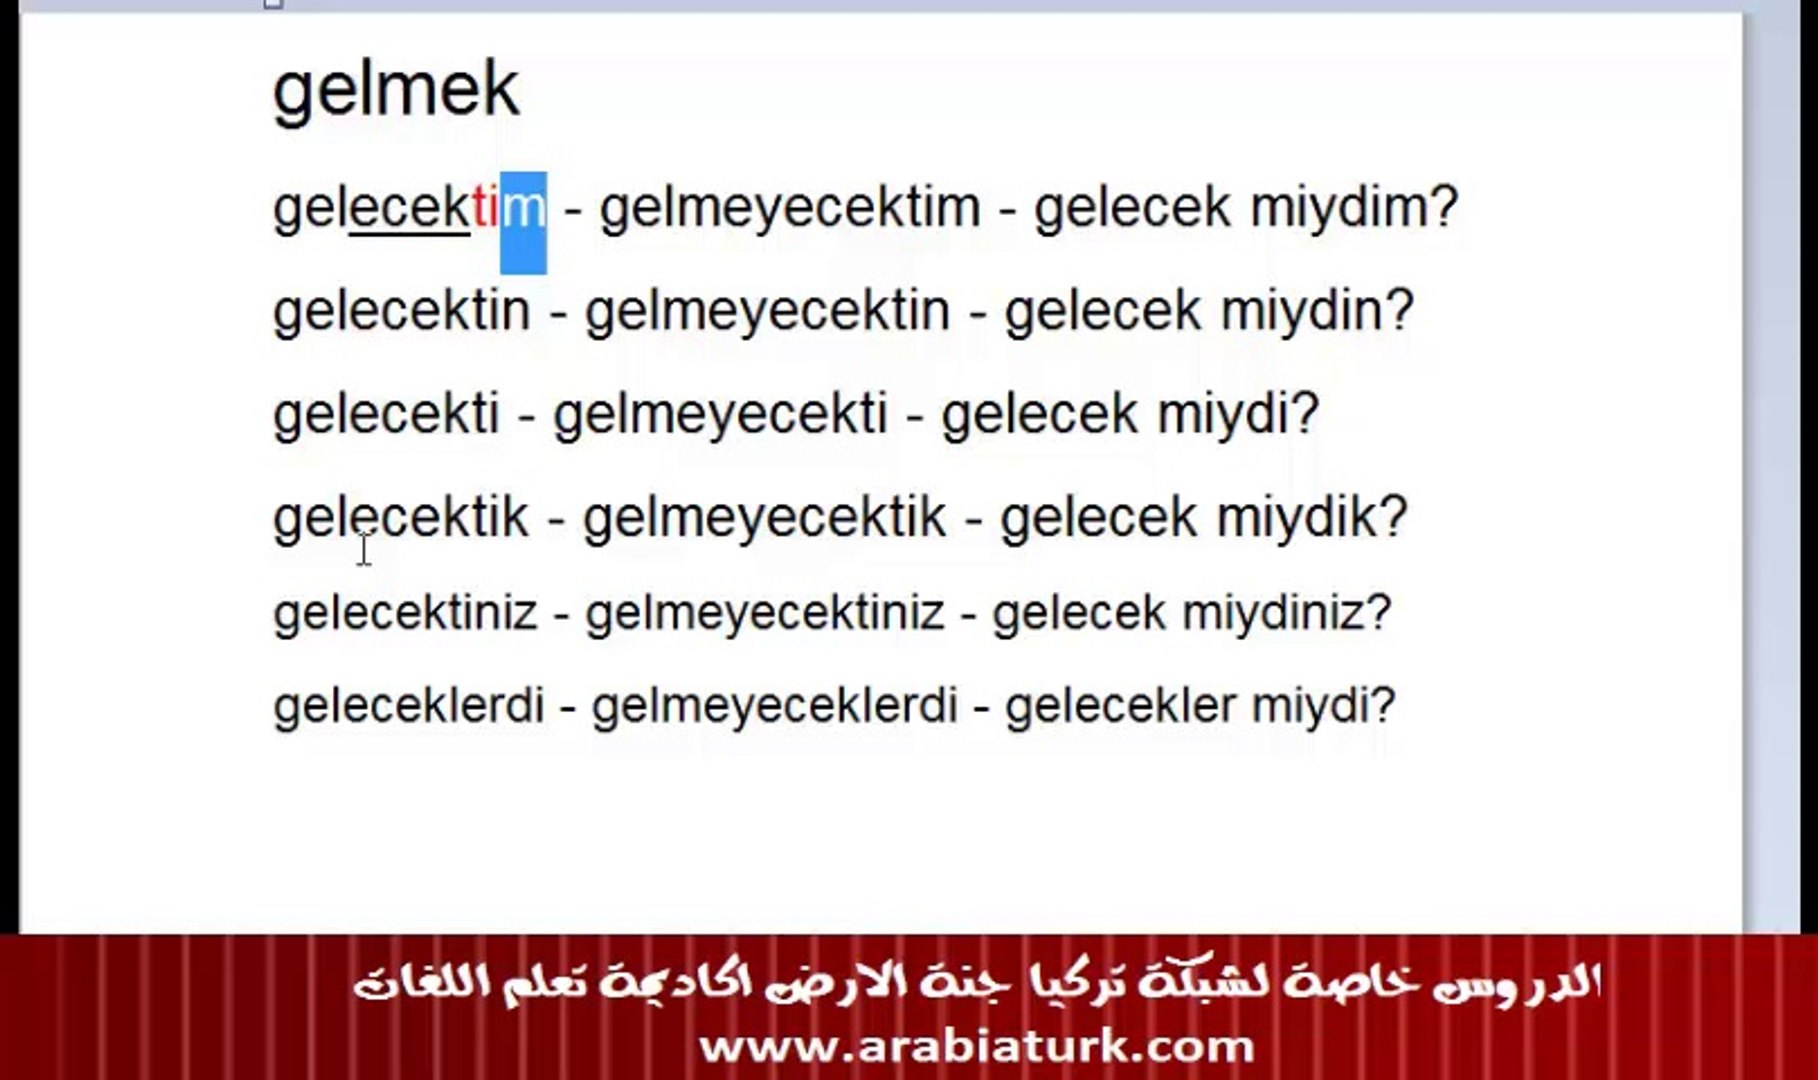 تعلم اللغة التركية معنا مجانا المستوى الثالث الدرس السابع (زمن المستقبل  الحكاية 3 - مقارنة ازمنة) - فيديو Dailymotion